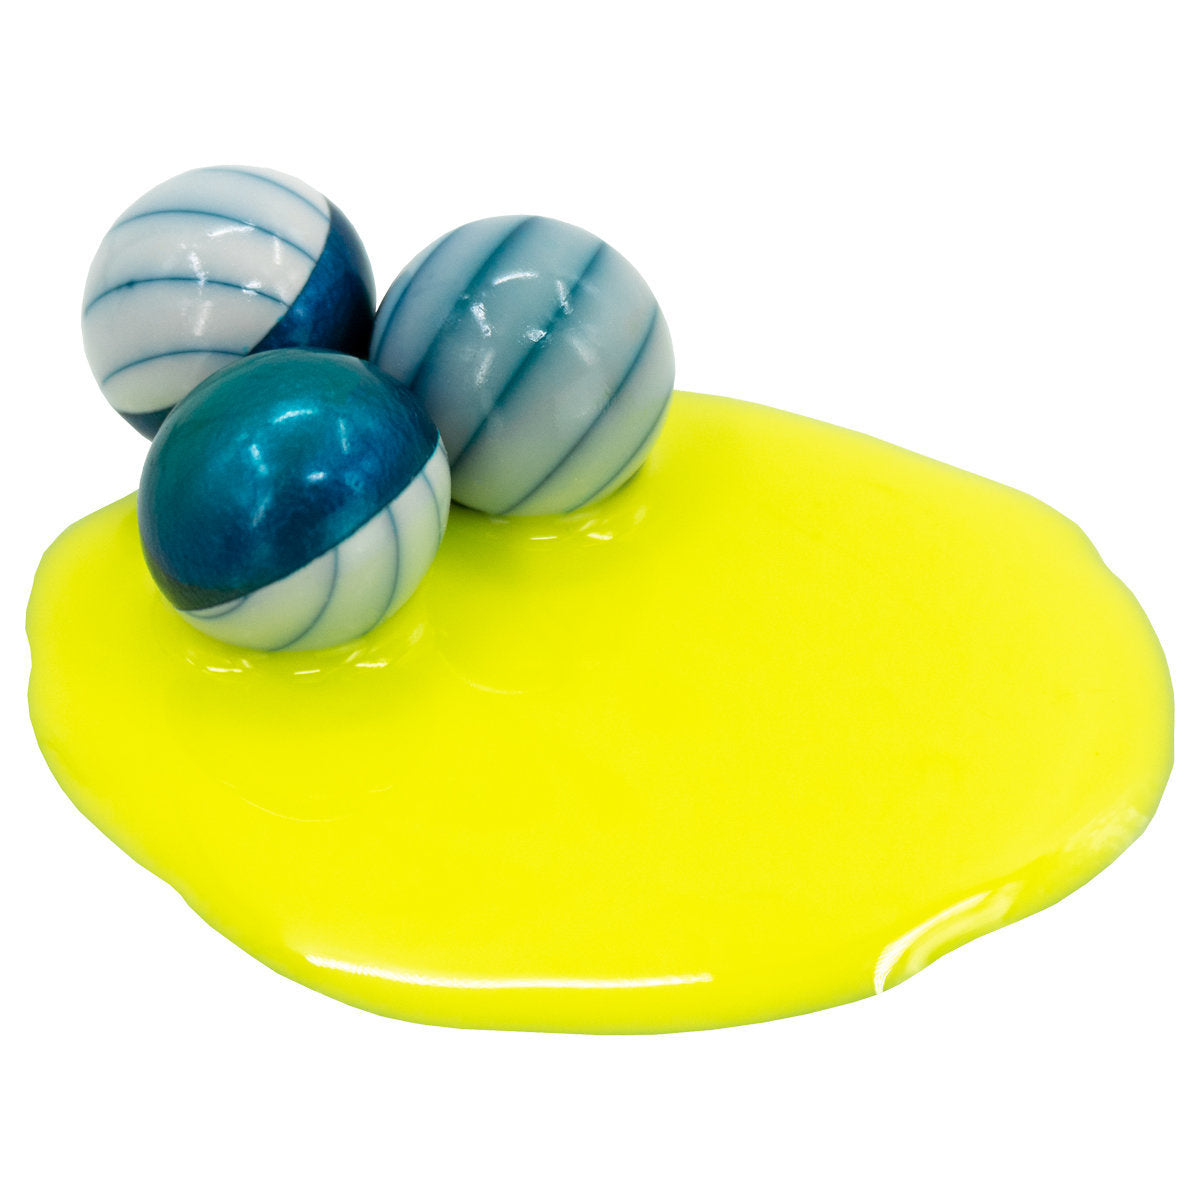 Valken Merica™ Paintballs - 2,000Ct | Shop Paintballs